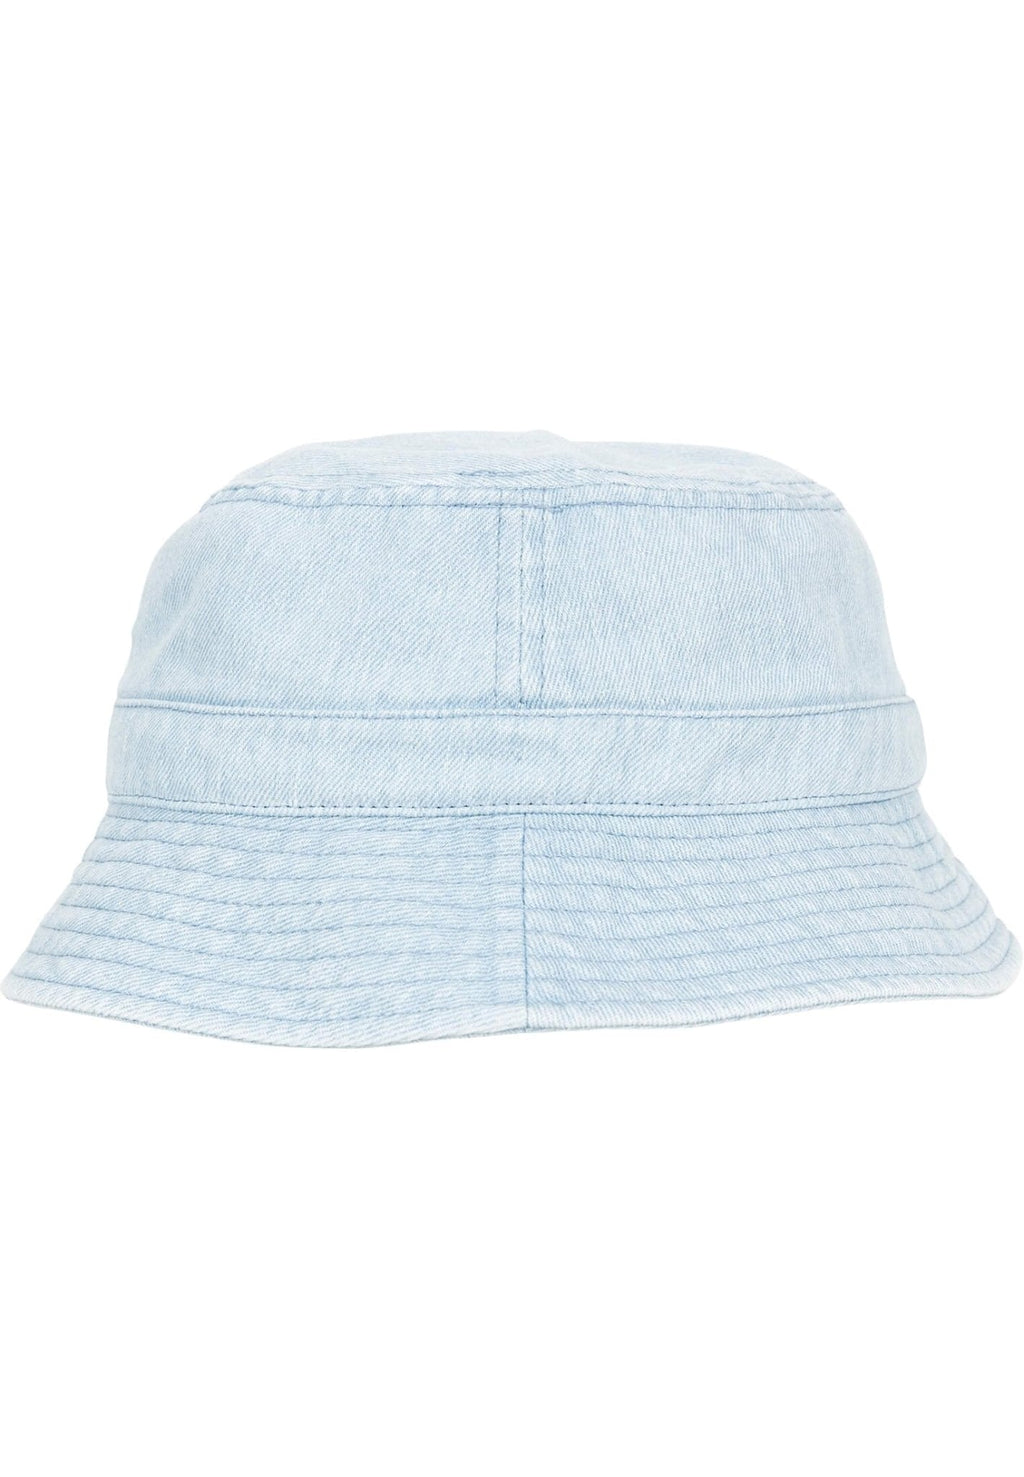 Kibiro skrybėlės džinsinis audinys - mėlyna